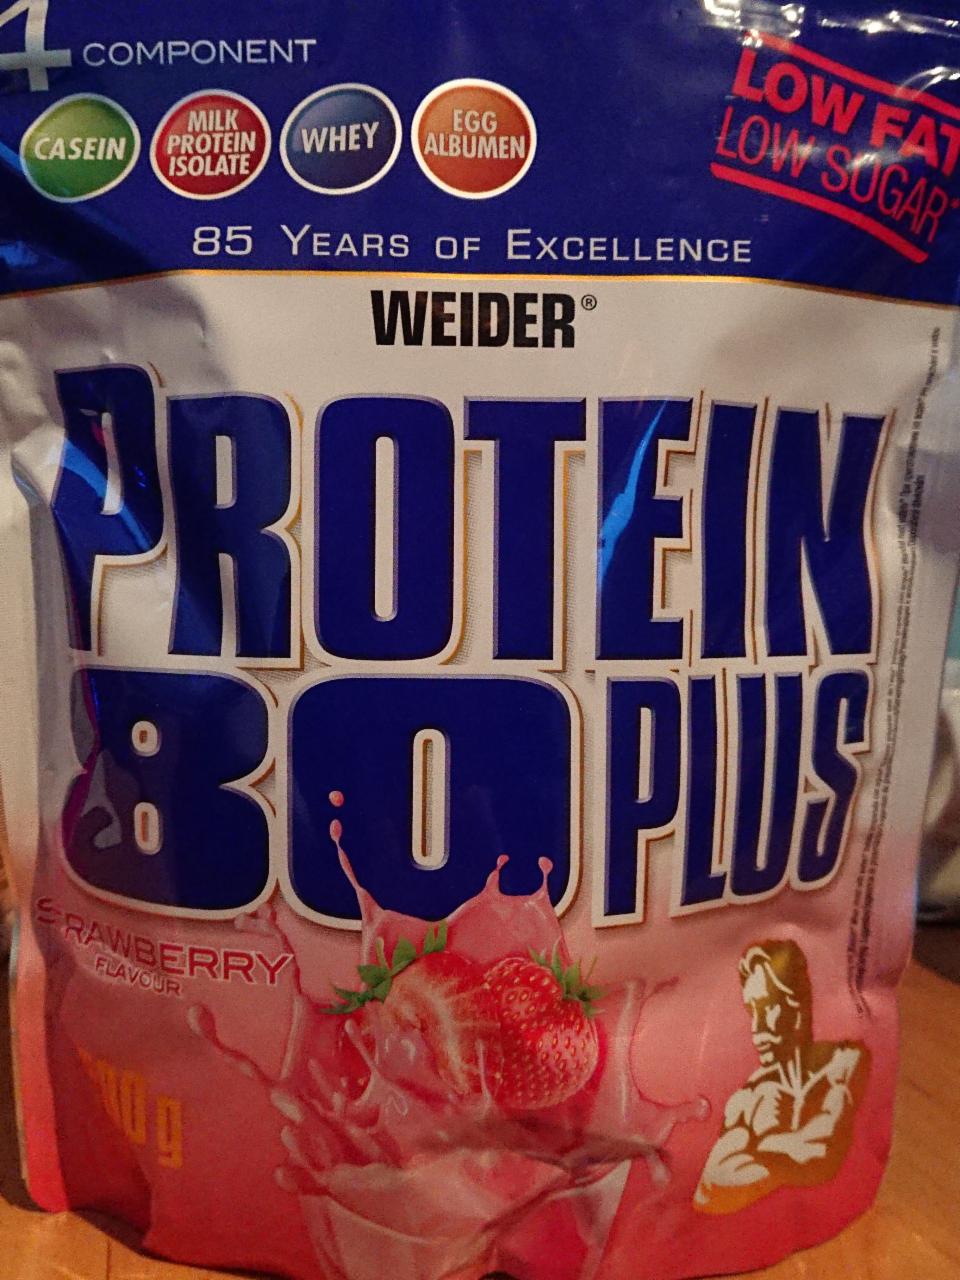 Fotografie - Protein 80 plus Strawberry Weider